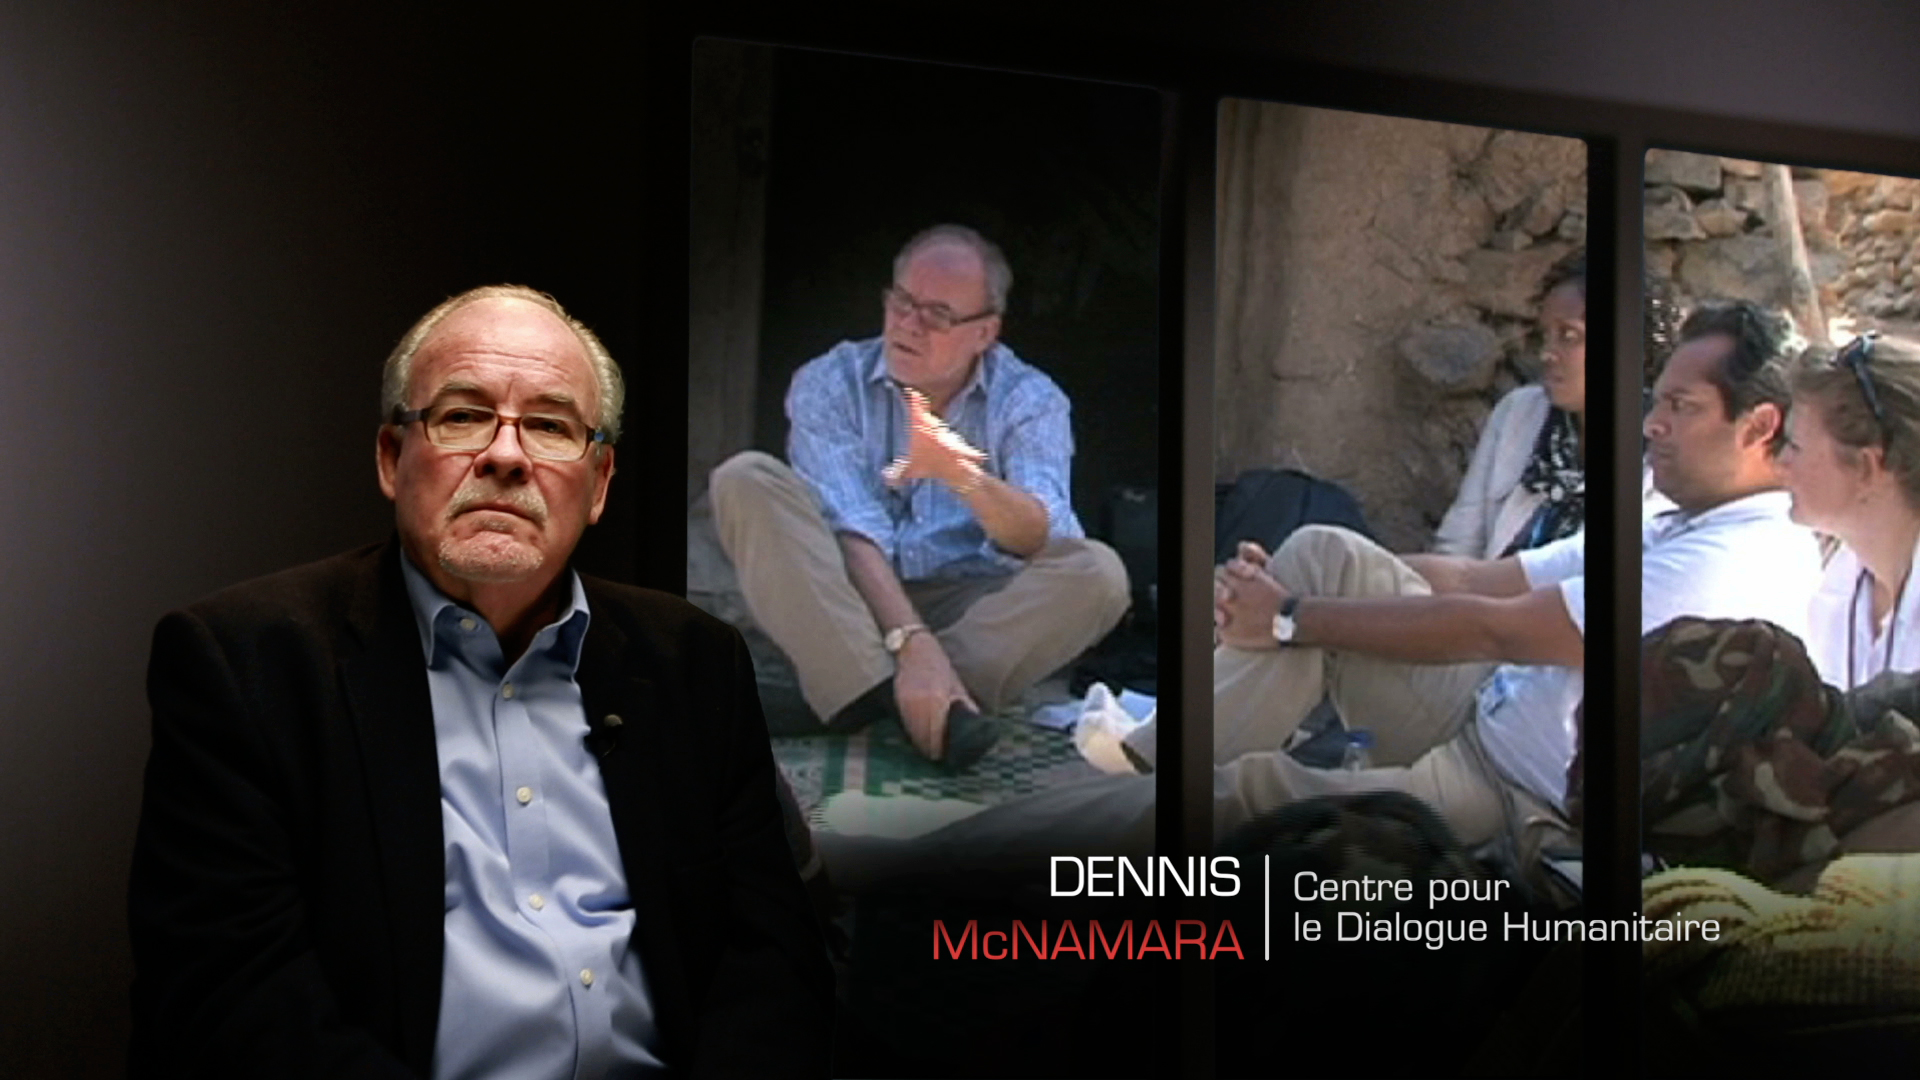 Les travailleurs de l'ombre : Assistance humanitaire - Dennis McNamara – CDH – Darfour.